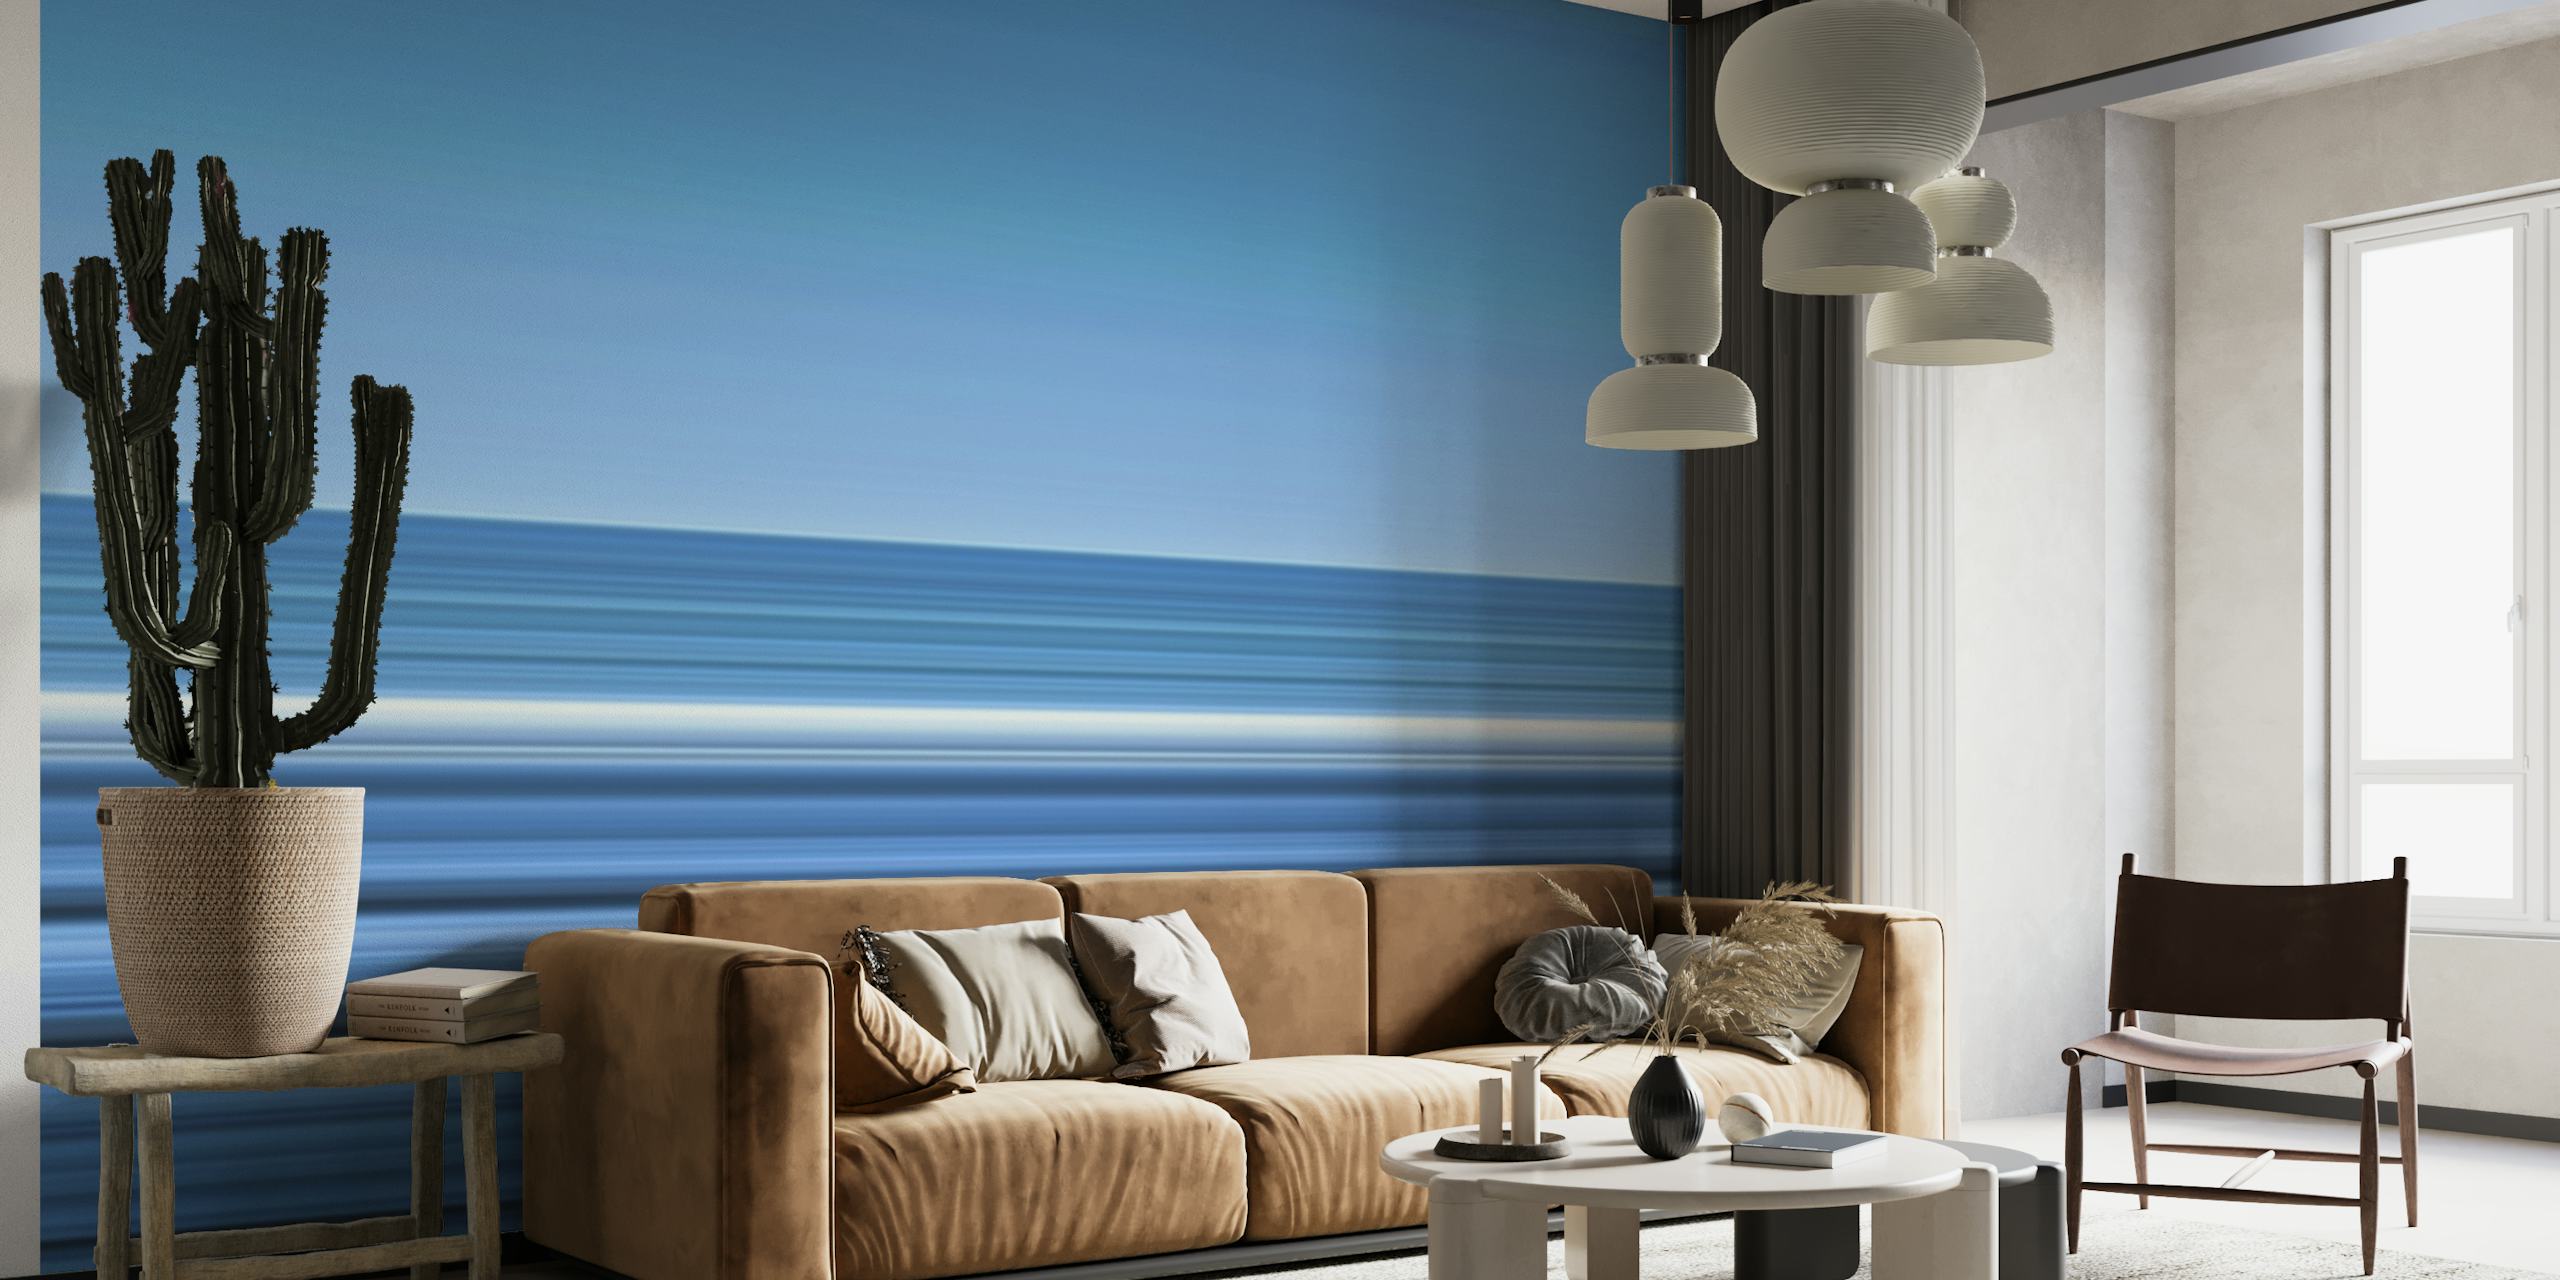 Abstrakcyjna fototapeta „Linje Cas Abao Beach” przedstawiająca spokojne niebieskie poziome paski.